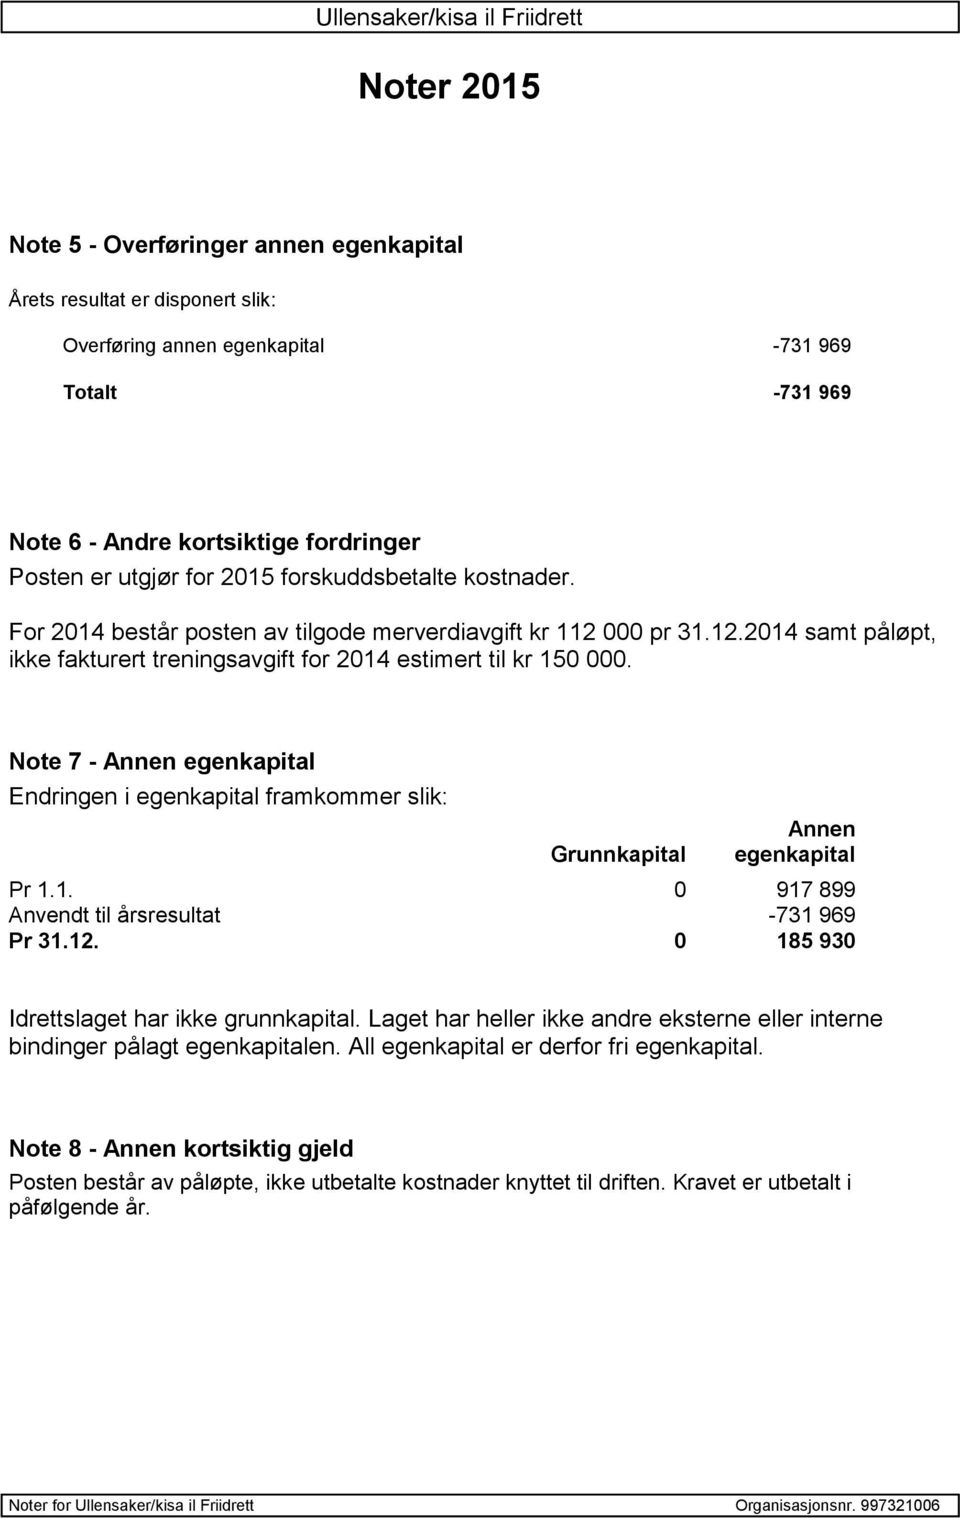 Note 7 - Annen egenkapital Endringen i egenkapital framkommer slik: Grunnkapital Annen egenkapital Pr 1.1. 0 917 899 Anvendt til årsresultat -731 969 Pr 31.12.